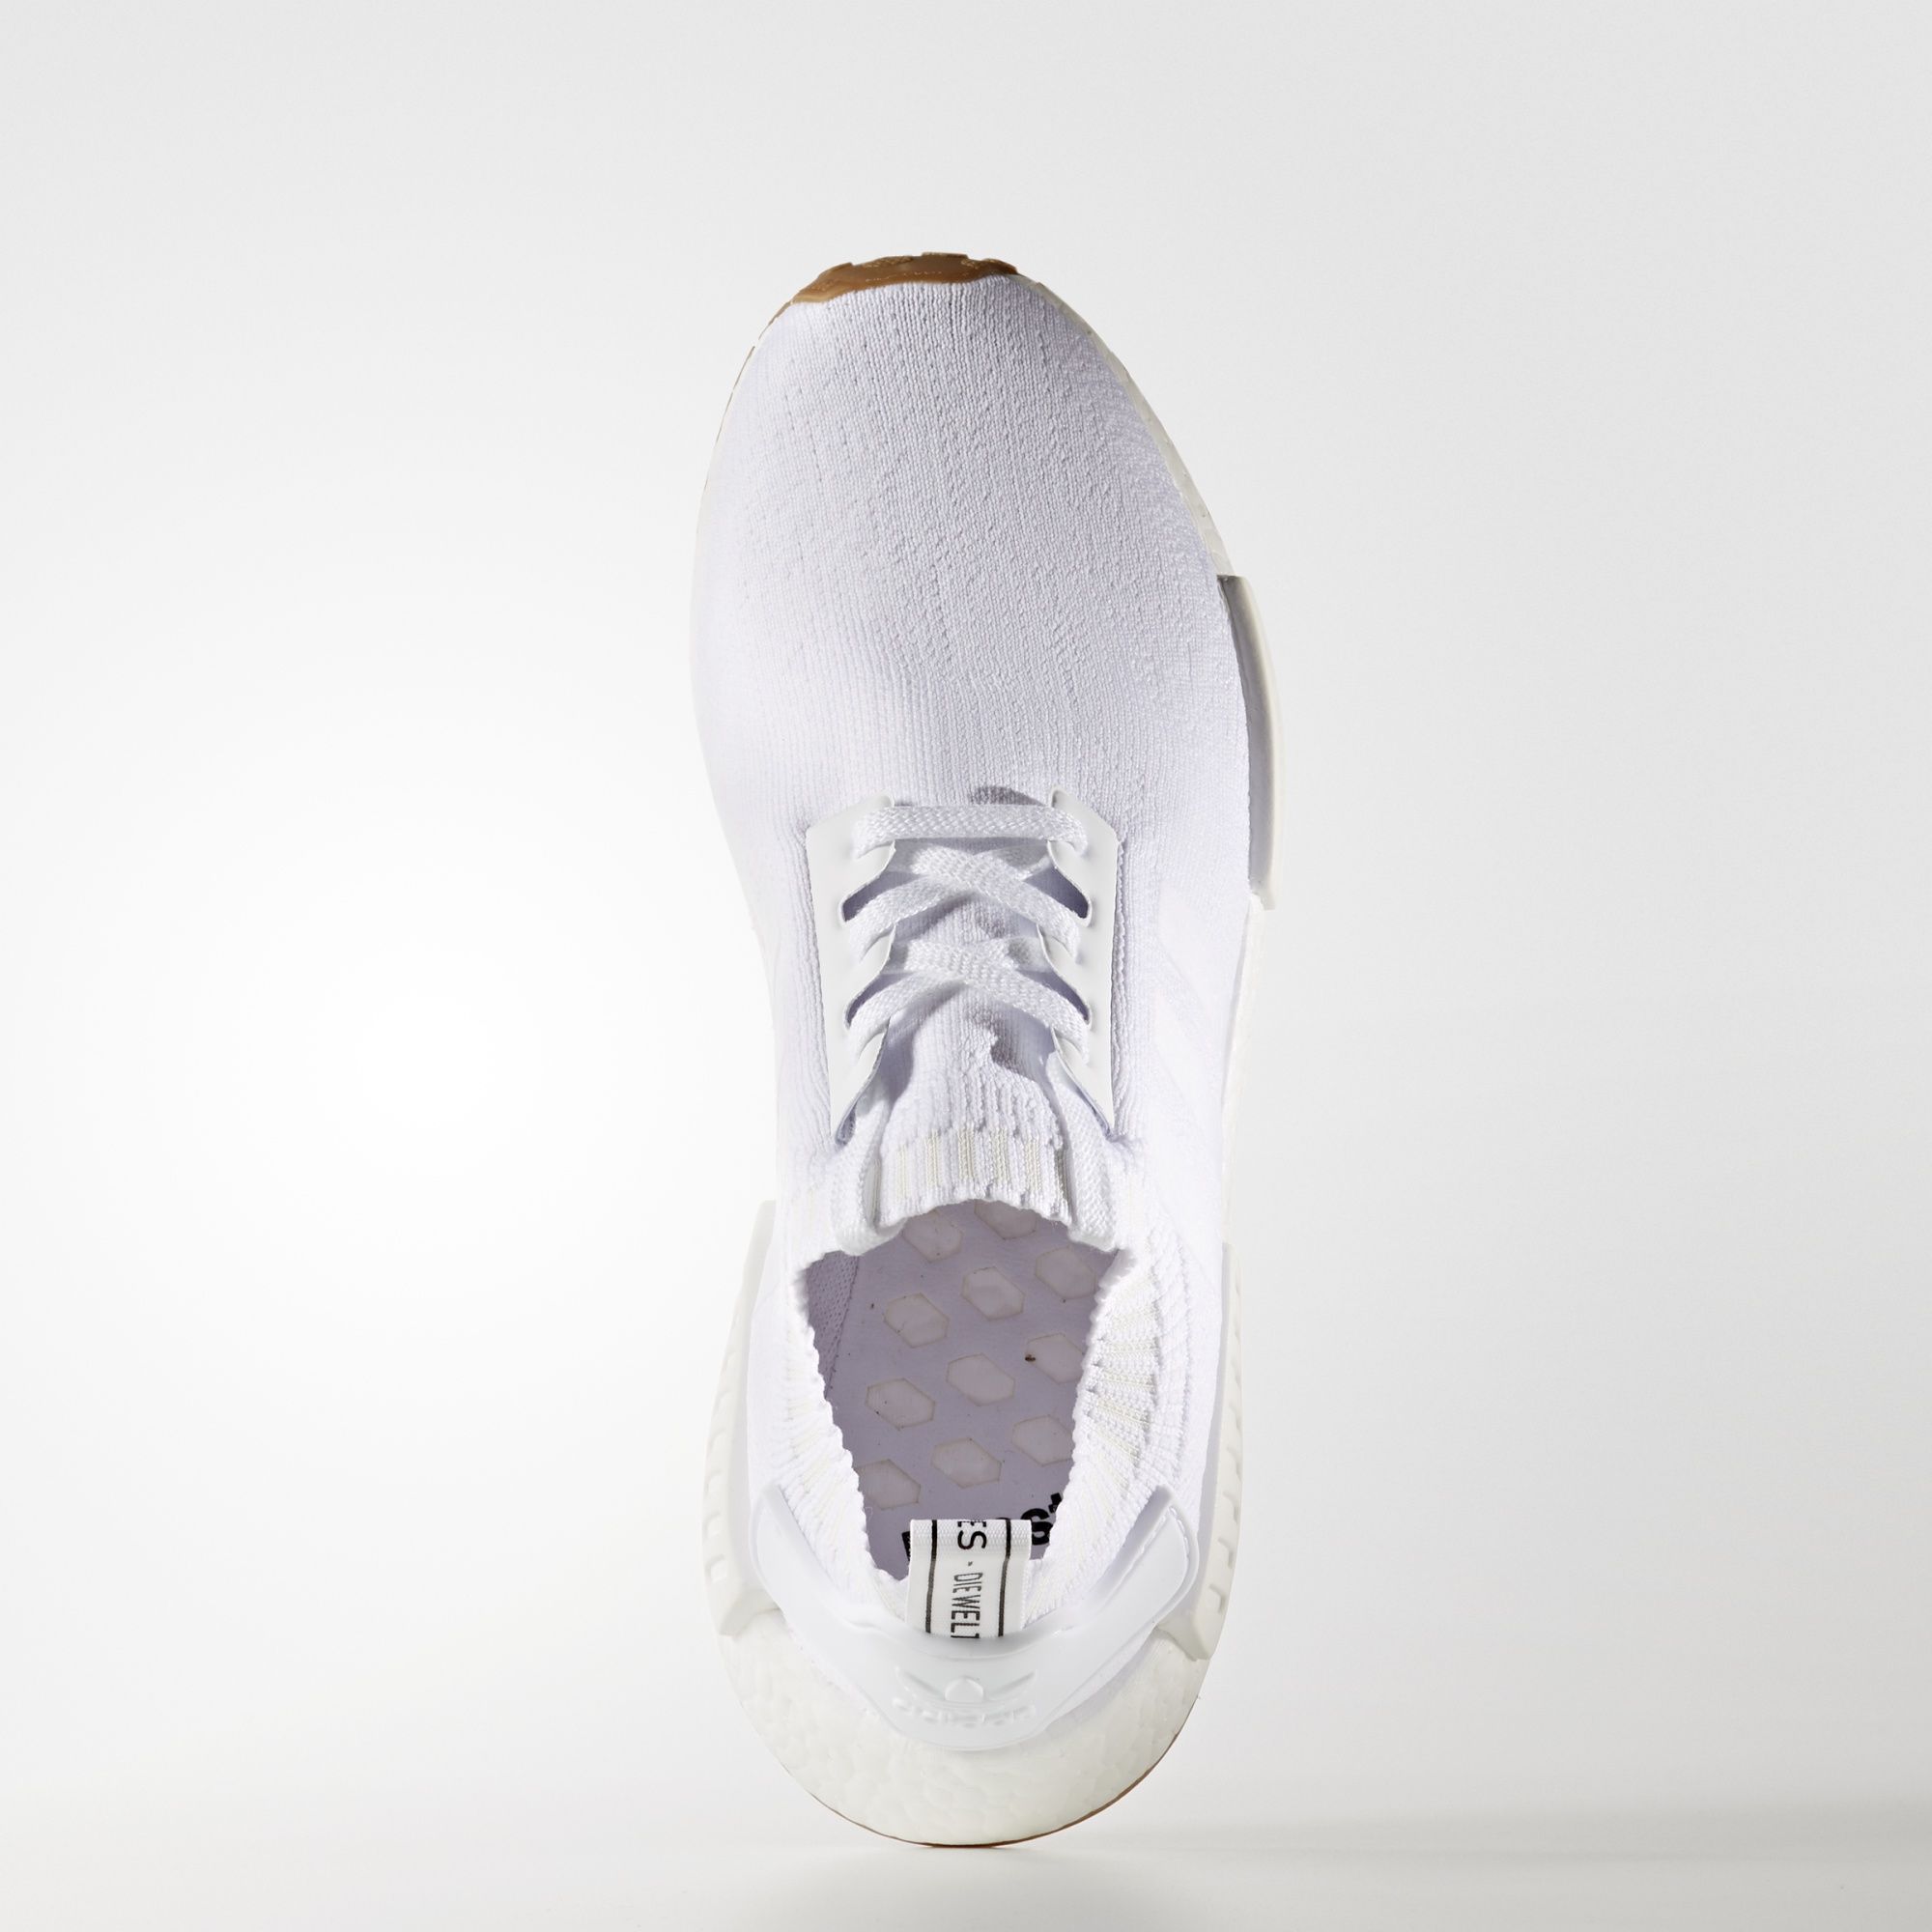 Adidas NMD_R1 Primeknit
Footwear White / Gum